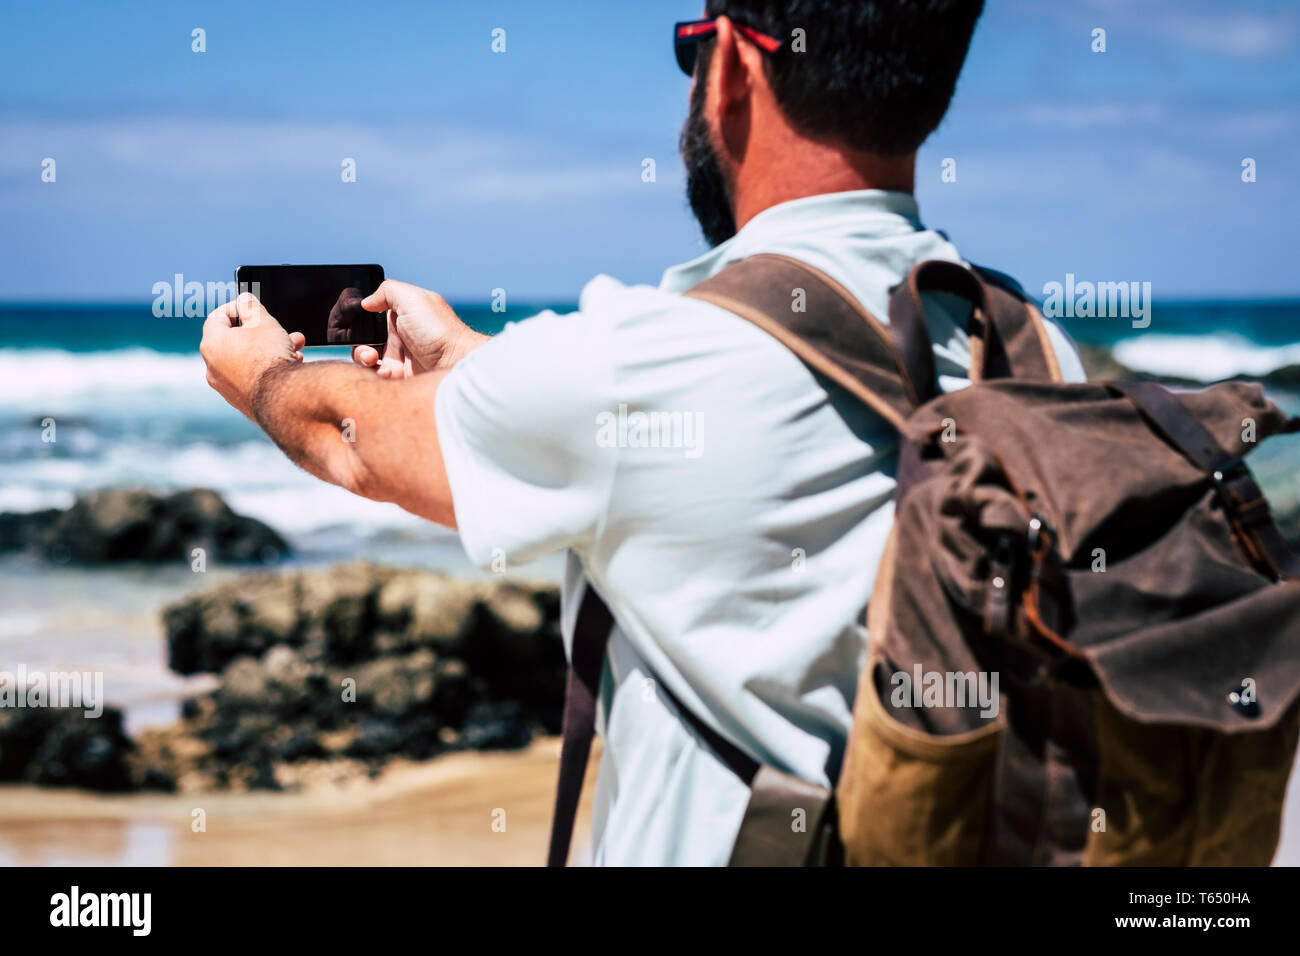 Kaukasische Mann mit Rucksack mit Mobile Phone Technology Gerät an den Strand und das Meer Wellen - Leute genießen reisen und hidd entdecken Stockfoto